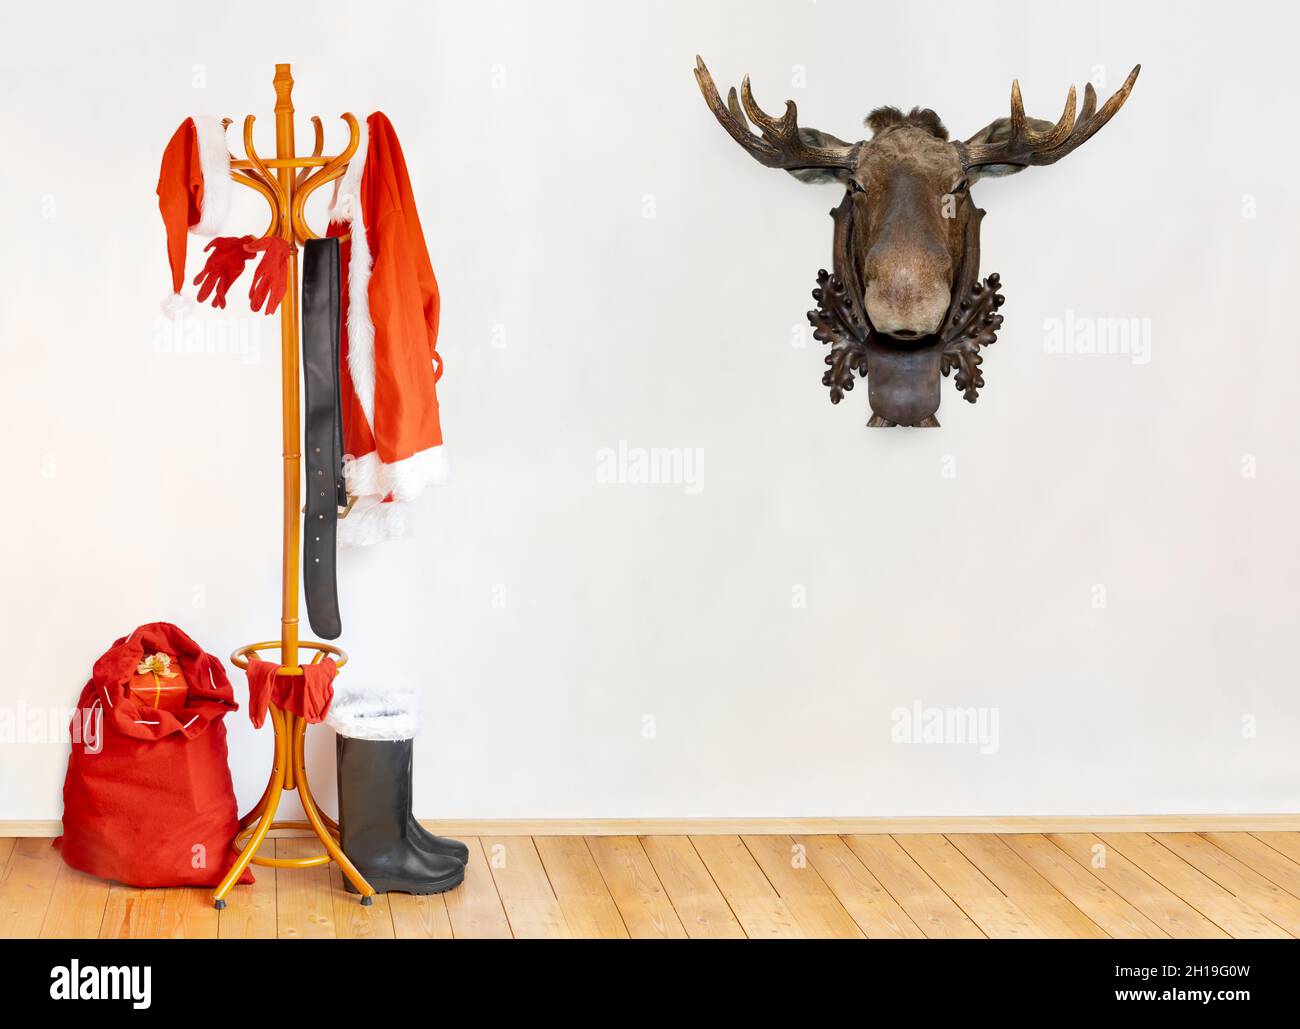 Die Ausrüstung des Weihnachtsmannes hängt am Kleiderhaken in einem Raum, wobei der Kopf des Rentieres als Trophäe an einer weißen Wand hängt. Stockfoto